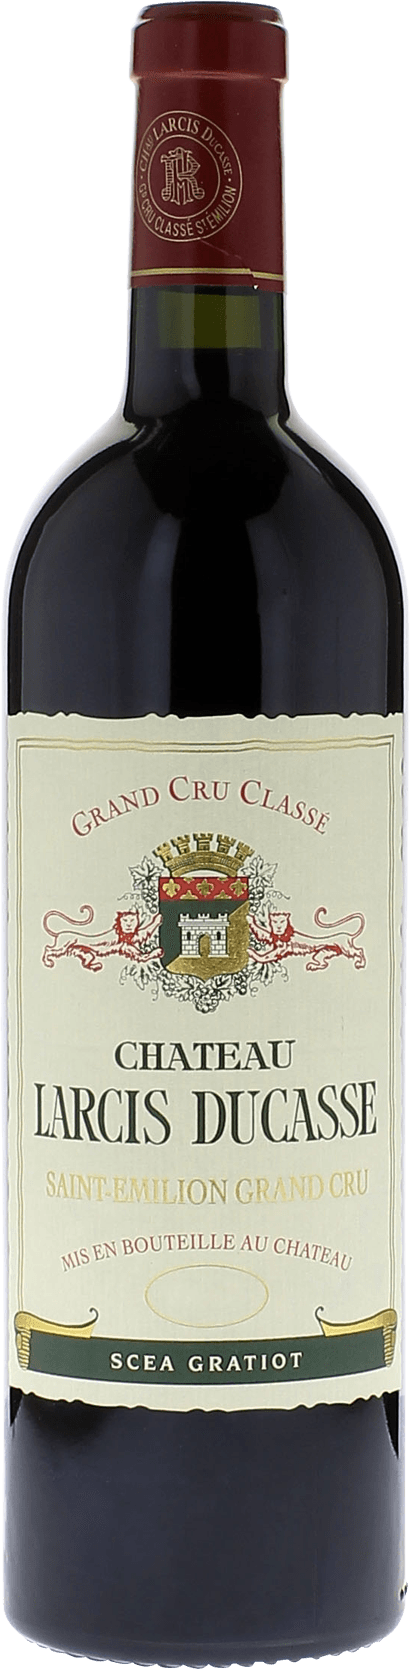 Larcis ducasse 1994 Grand cru class Saint-Emilion, Bordeaux rouge